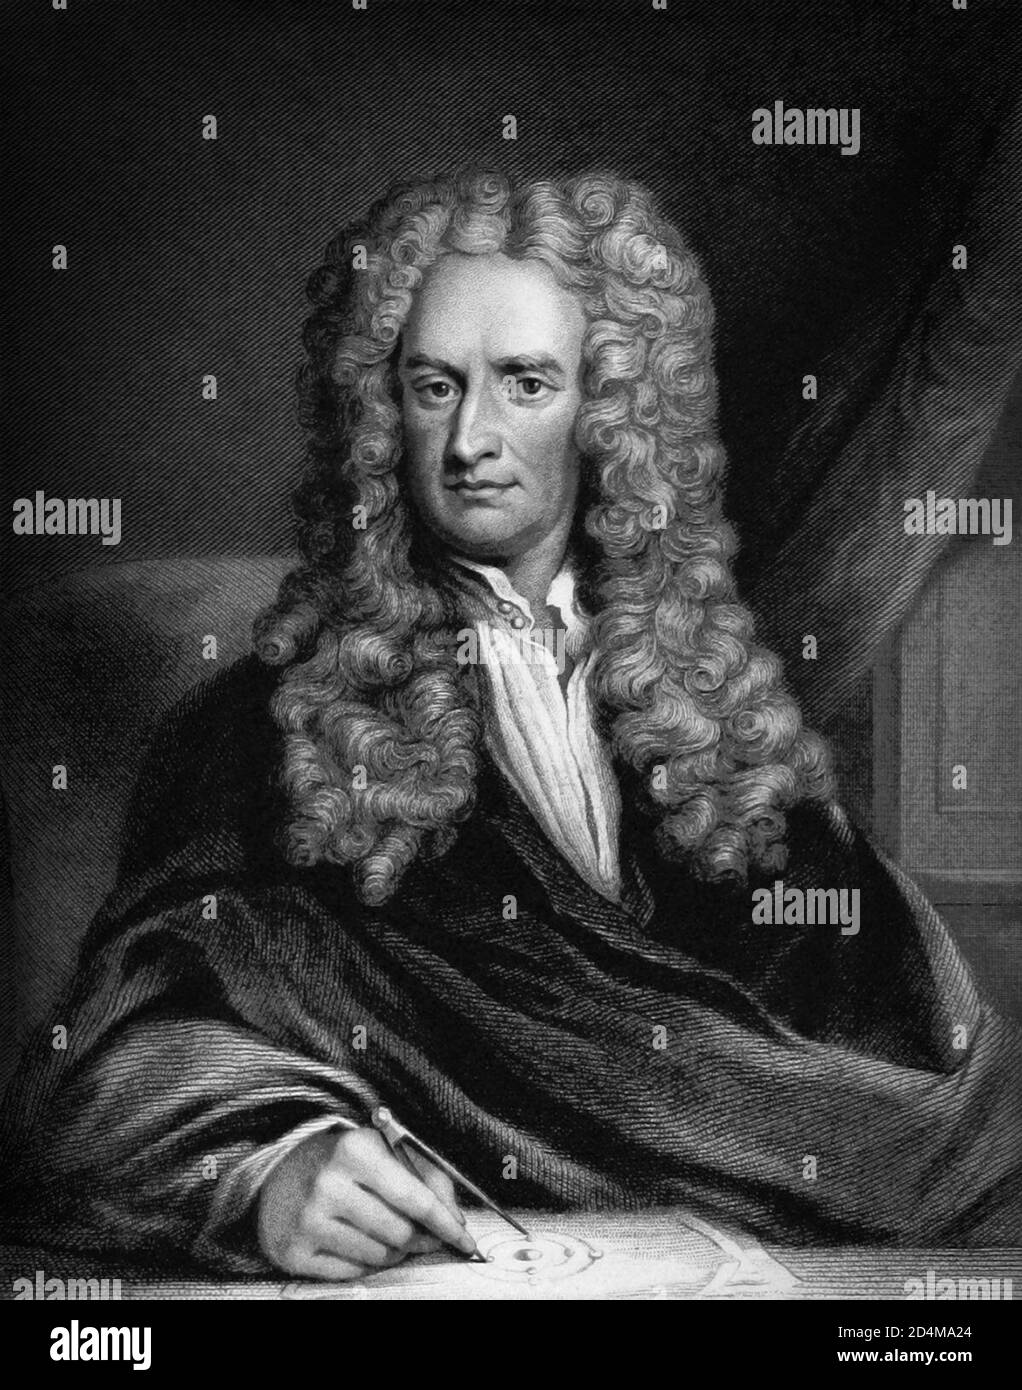 Sir Isaac Newton PRS (1642/43-1726/27) è stato un matematico, fisico, astronomo, teologo e autore inglese (descritto ai suoi giorni come un 'filosofo naturale') ampiamente riconosciuto come uno degli scienziati più influenti di tutti i tempi e come una figura chiave nella rivoluzione scientifica. Foto Stock